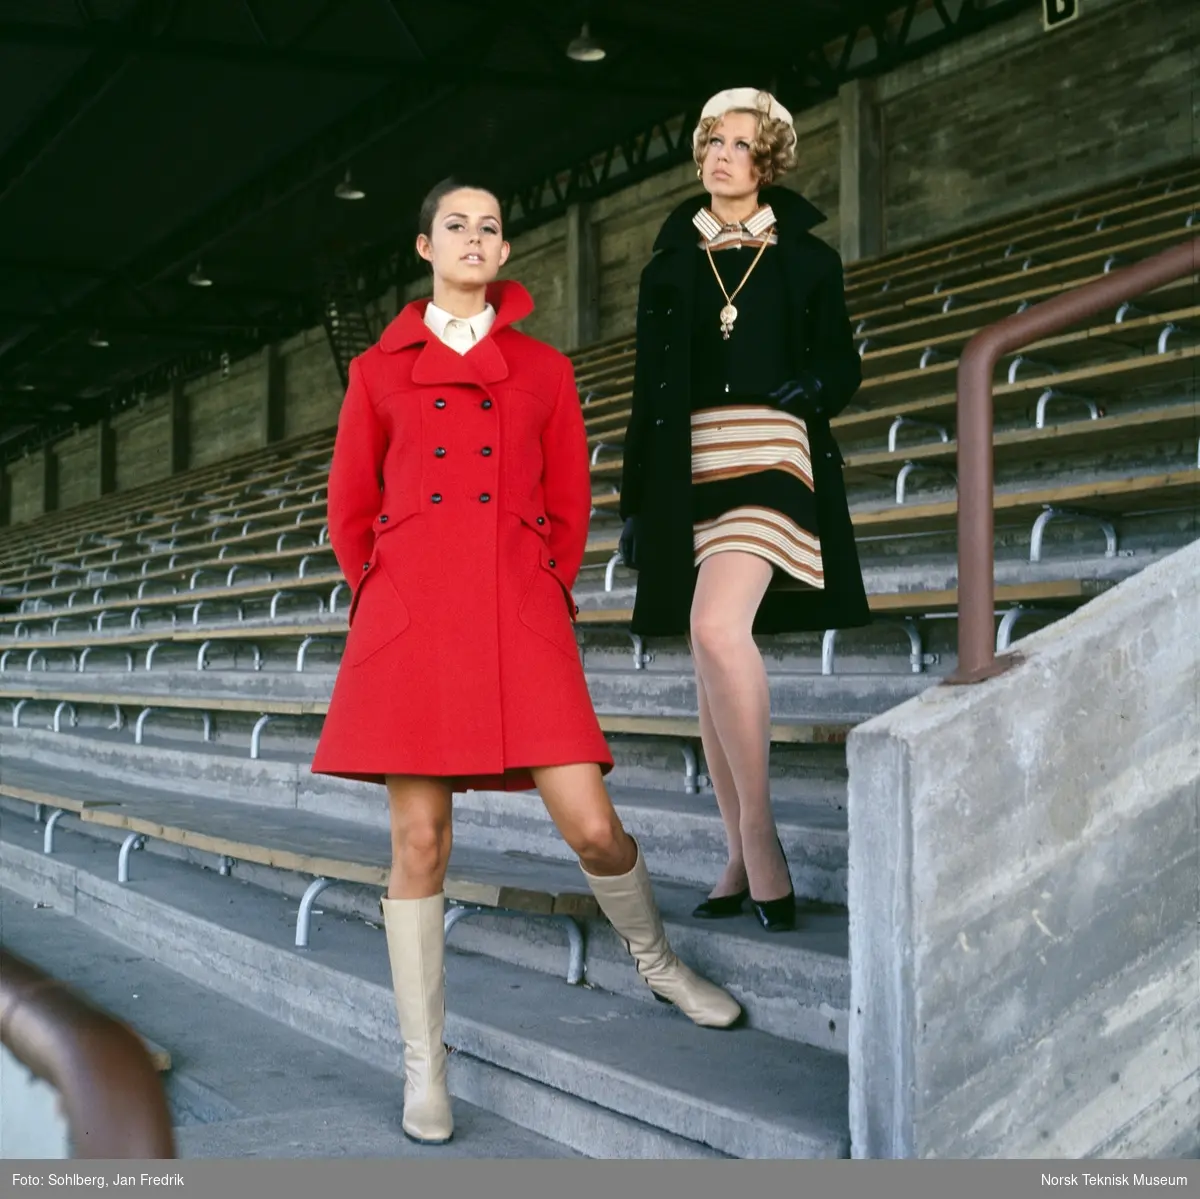 Motebilde, to kvinner, den ene i mørk kåpe over stripete kjole, den andre i rød kåpe, på tribune på idrettsplass. Bildet er en del av en serie der noen er publisert i ukebladet Det Nye 1969, nr. 38.